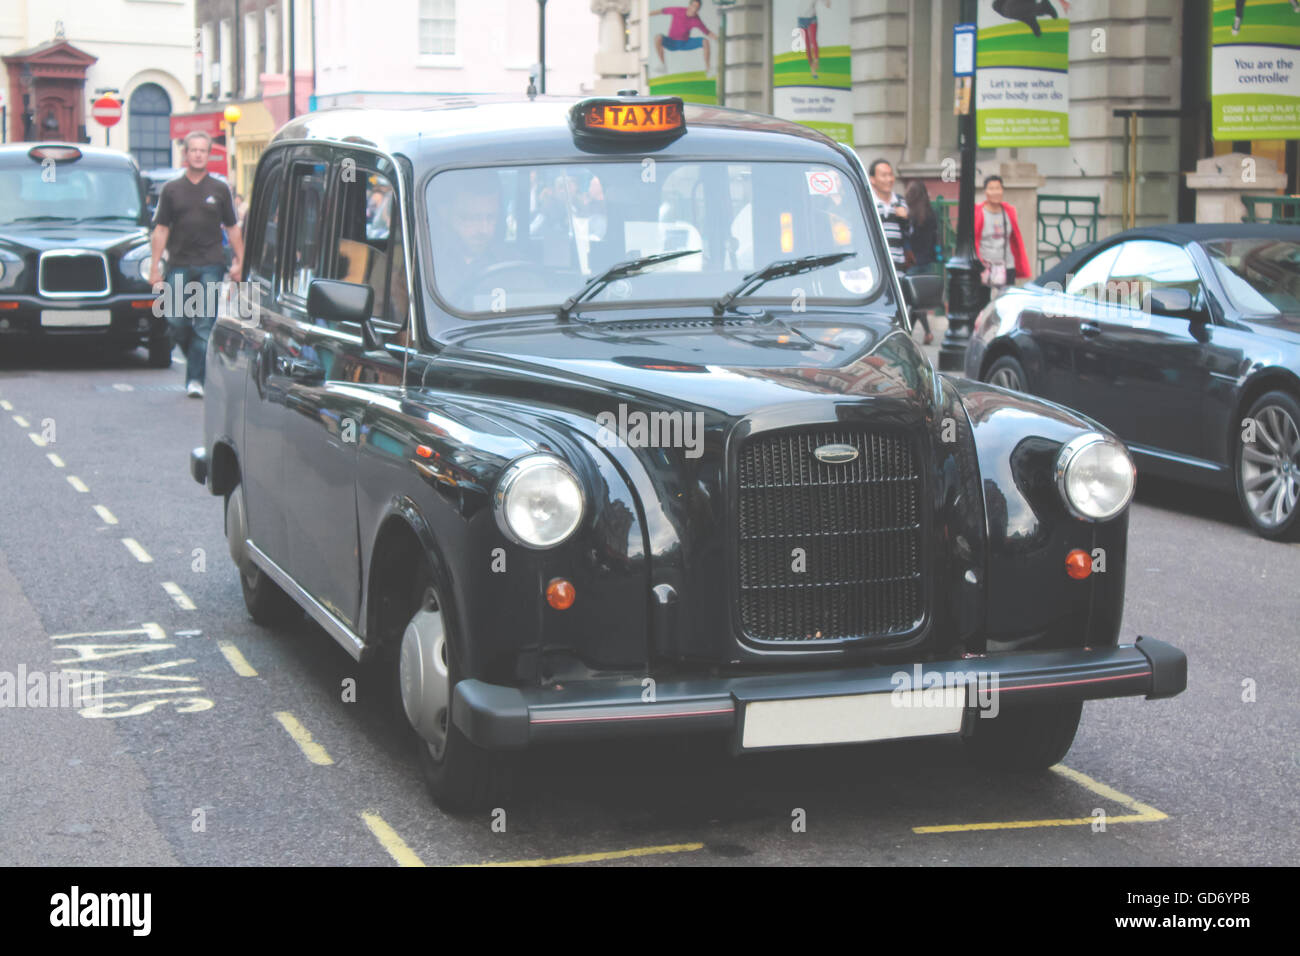 London, UK - August 19,2010: unbekannter Mann sitzt in seinem klassischen schwarzen Taxi Taxi für Kunden in London. Stockfoto